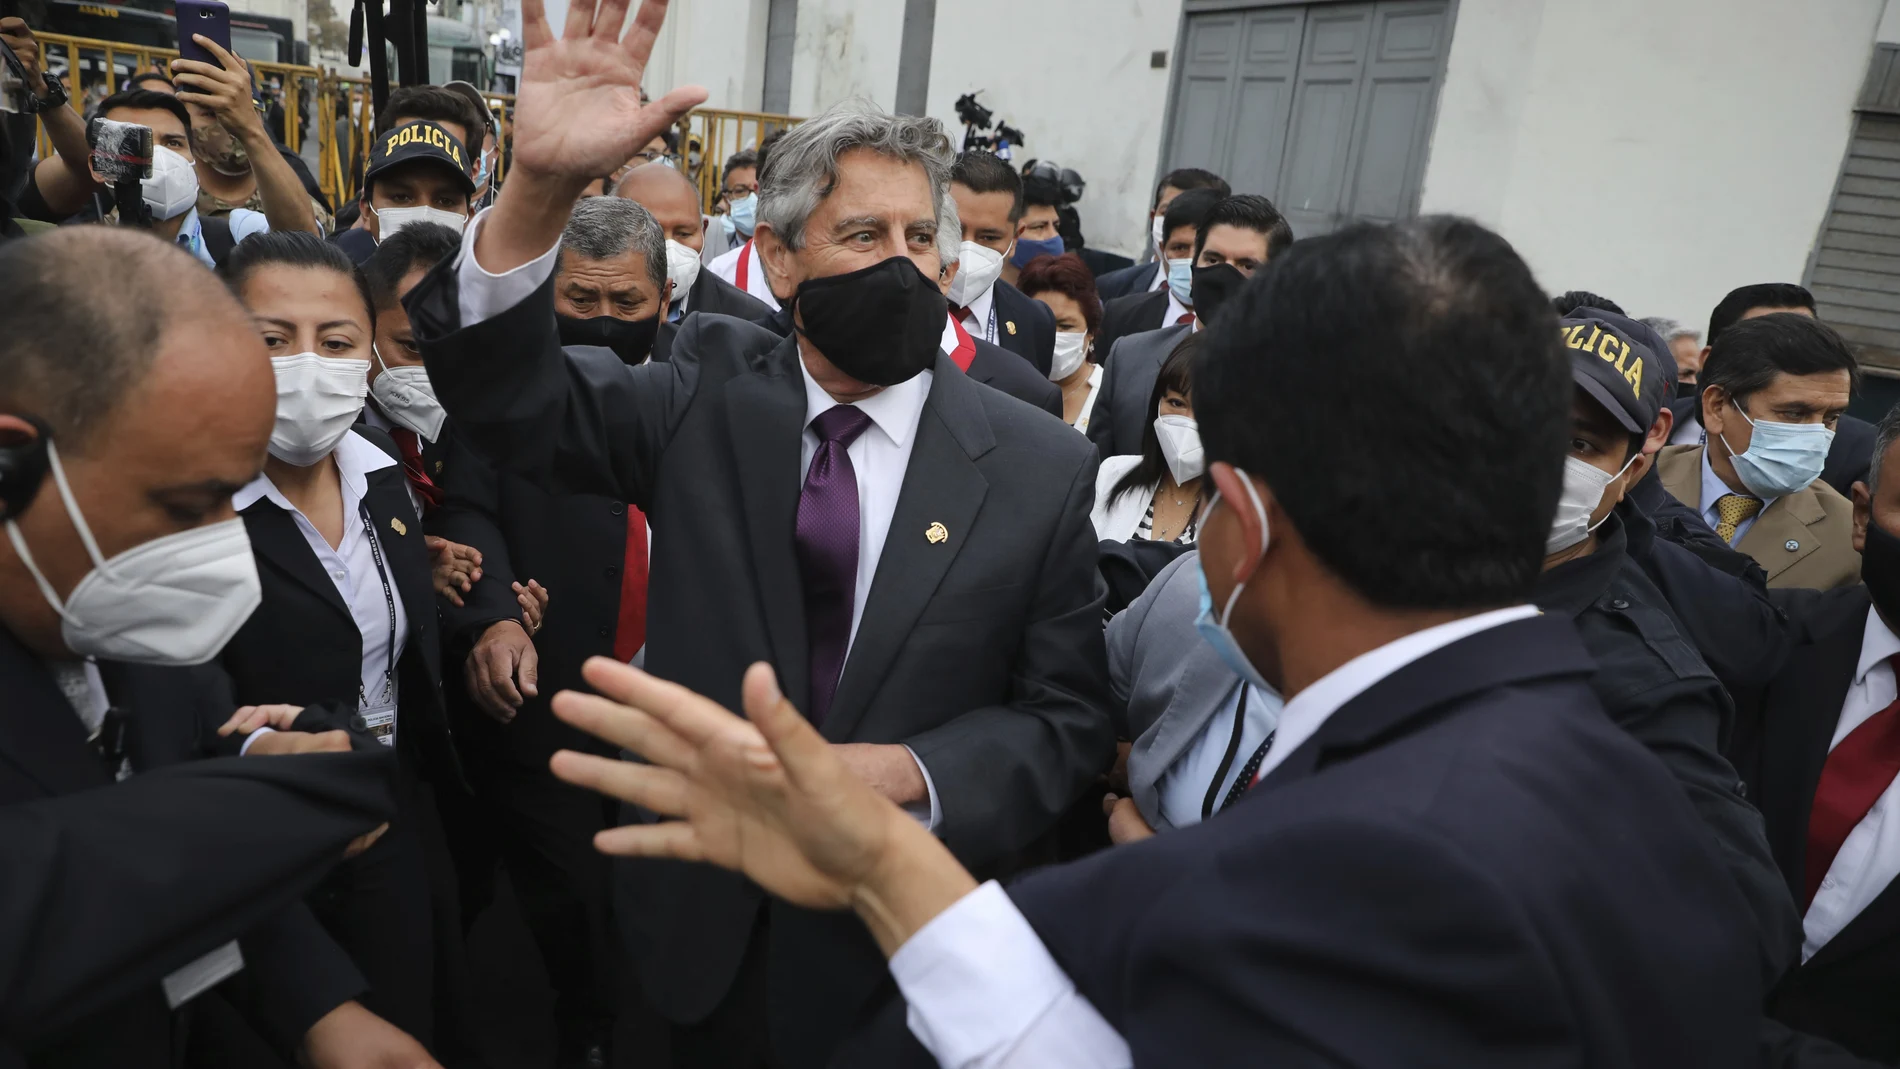 El nuevo presidente interino de Perú, Francisco Sagasti, saluda a la multitud a las afueras del Congreso en Lima.